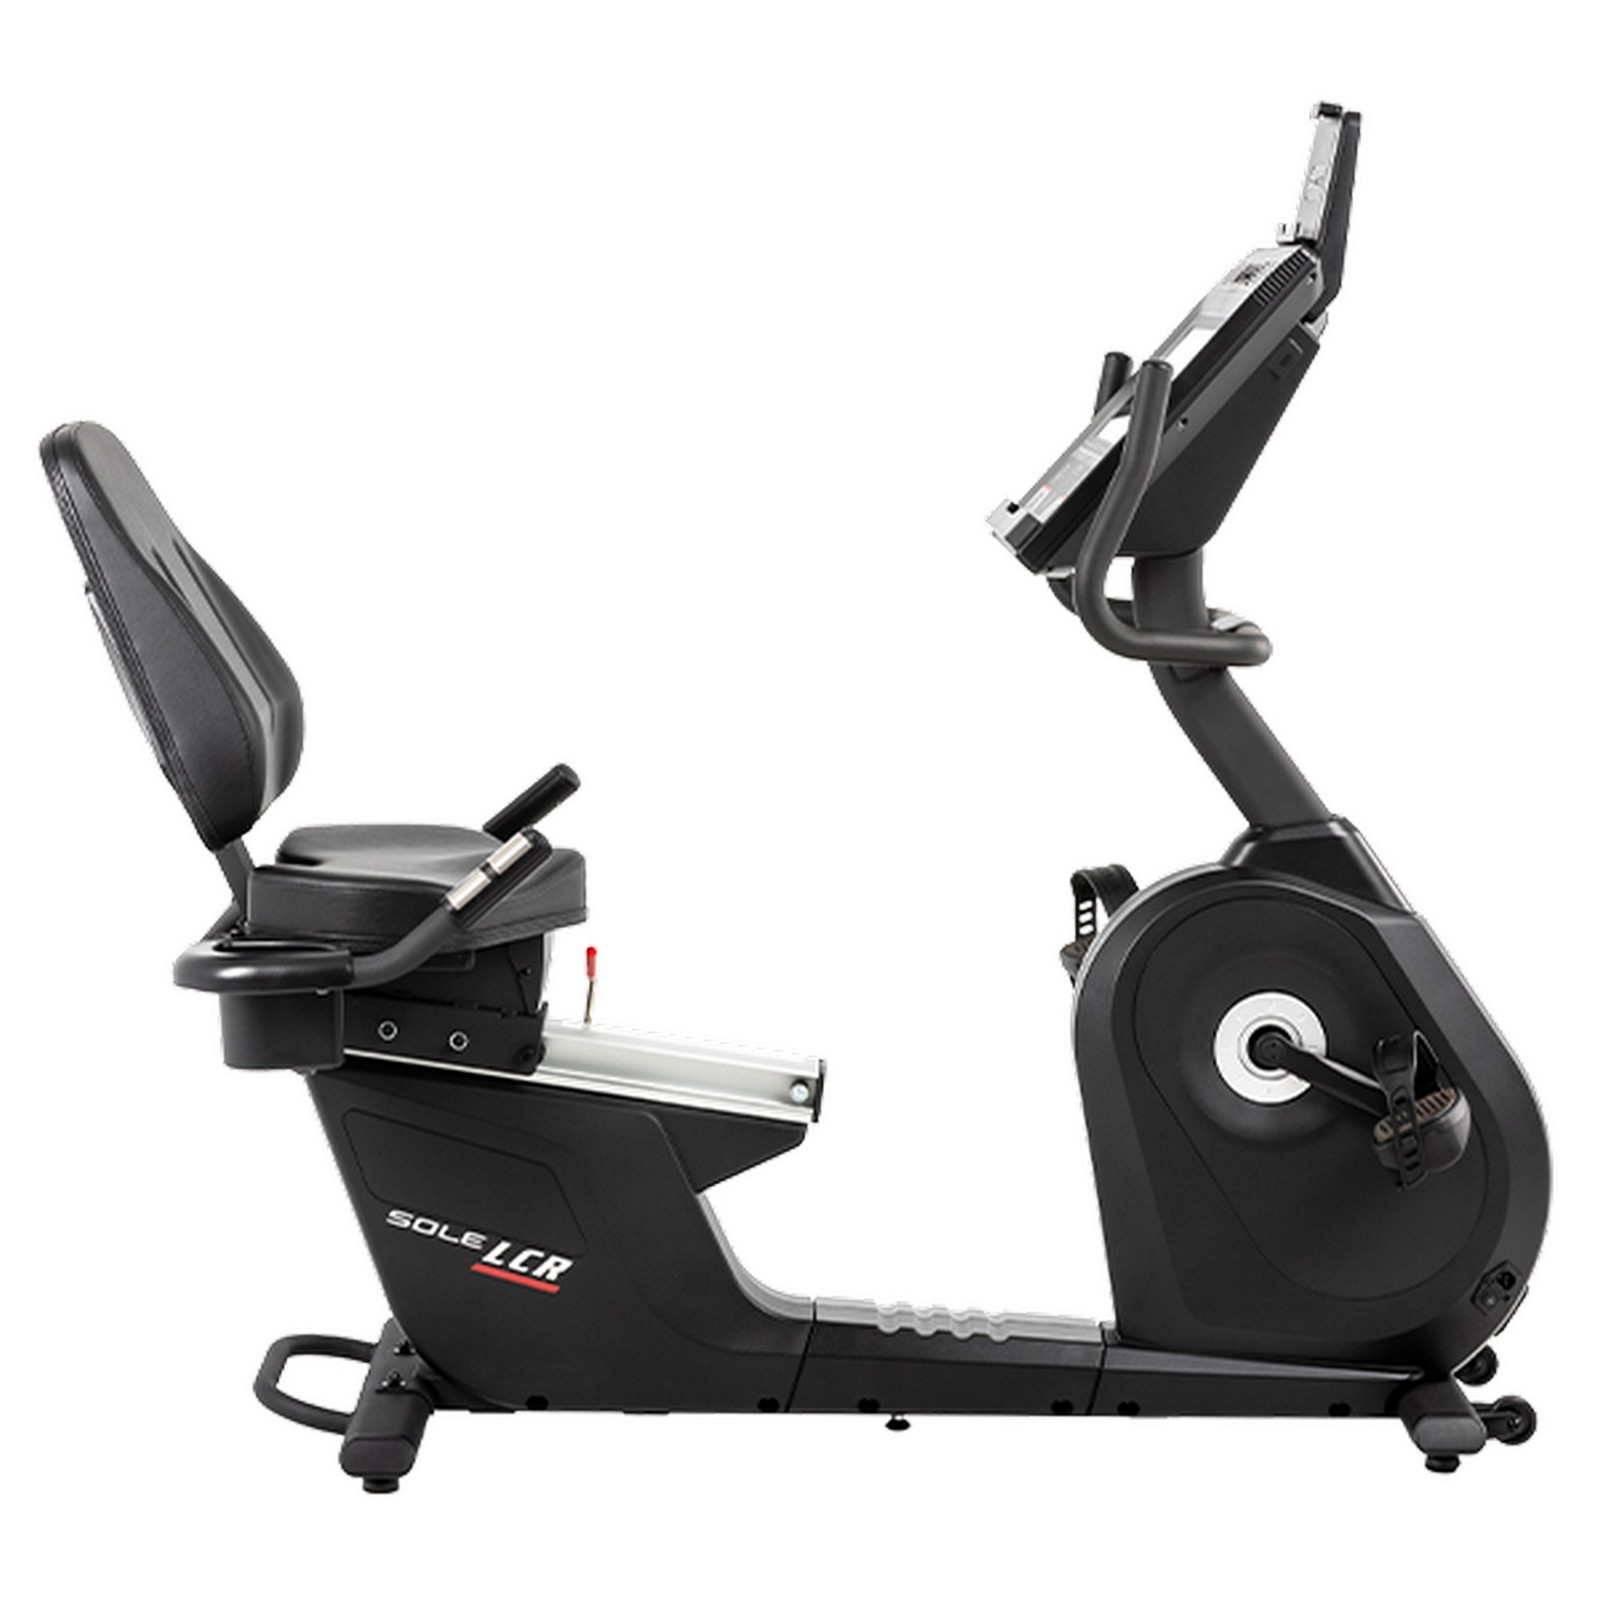 Горизонтальный велотренажер Sole Fitness LCR 2023 1600_1600